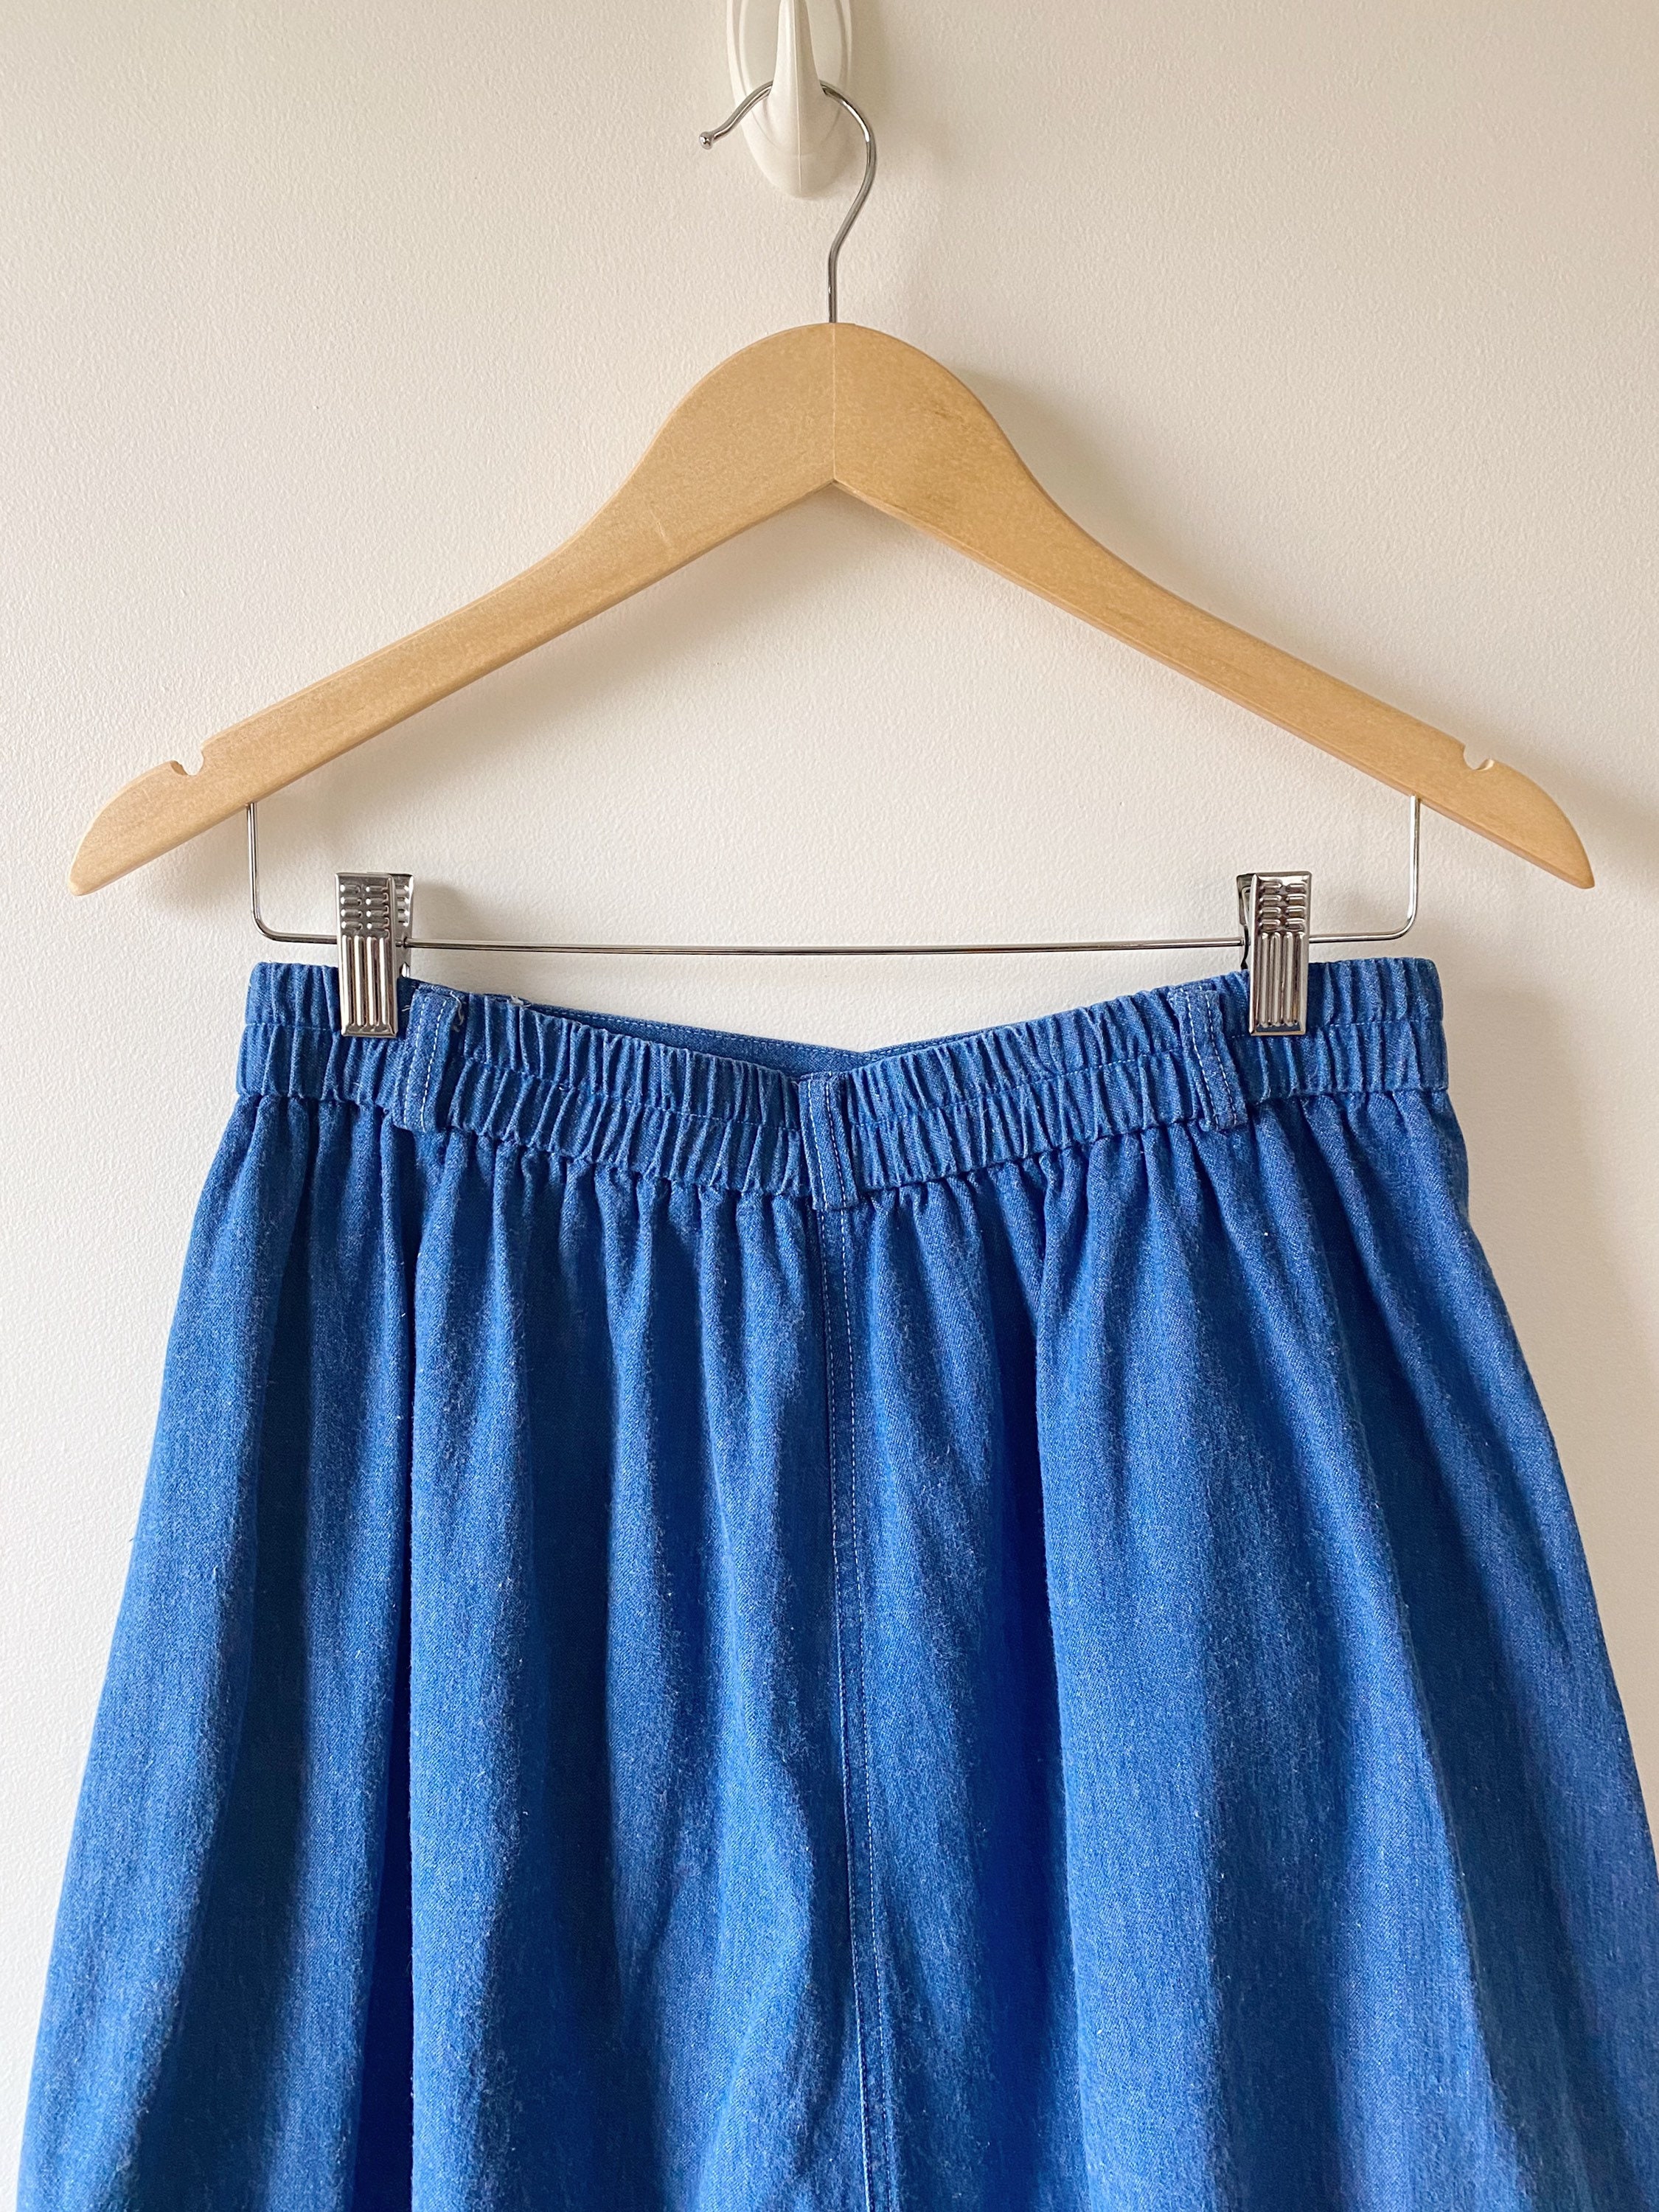 Vintage 70s Denim Midi Skirt Full Denim Skirt With Contrast - Etsy